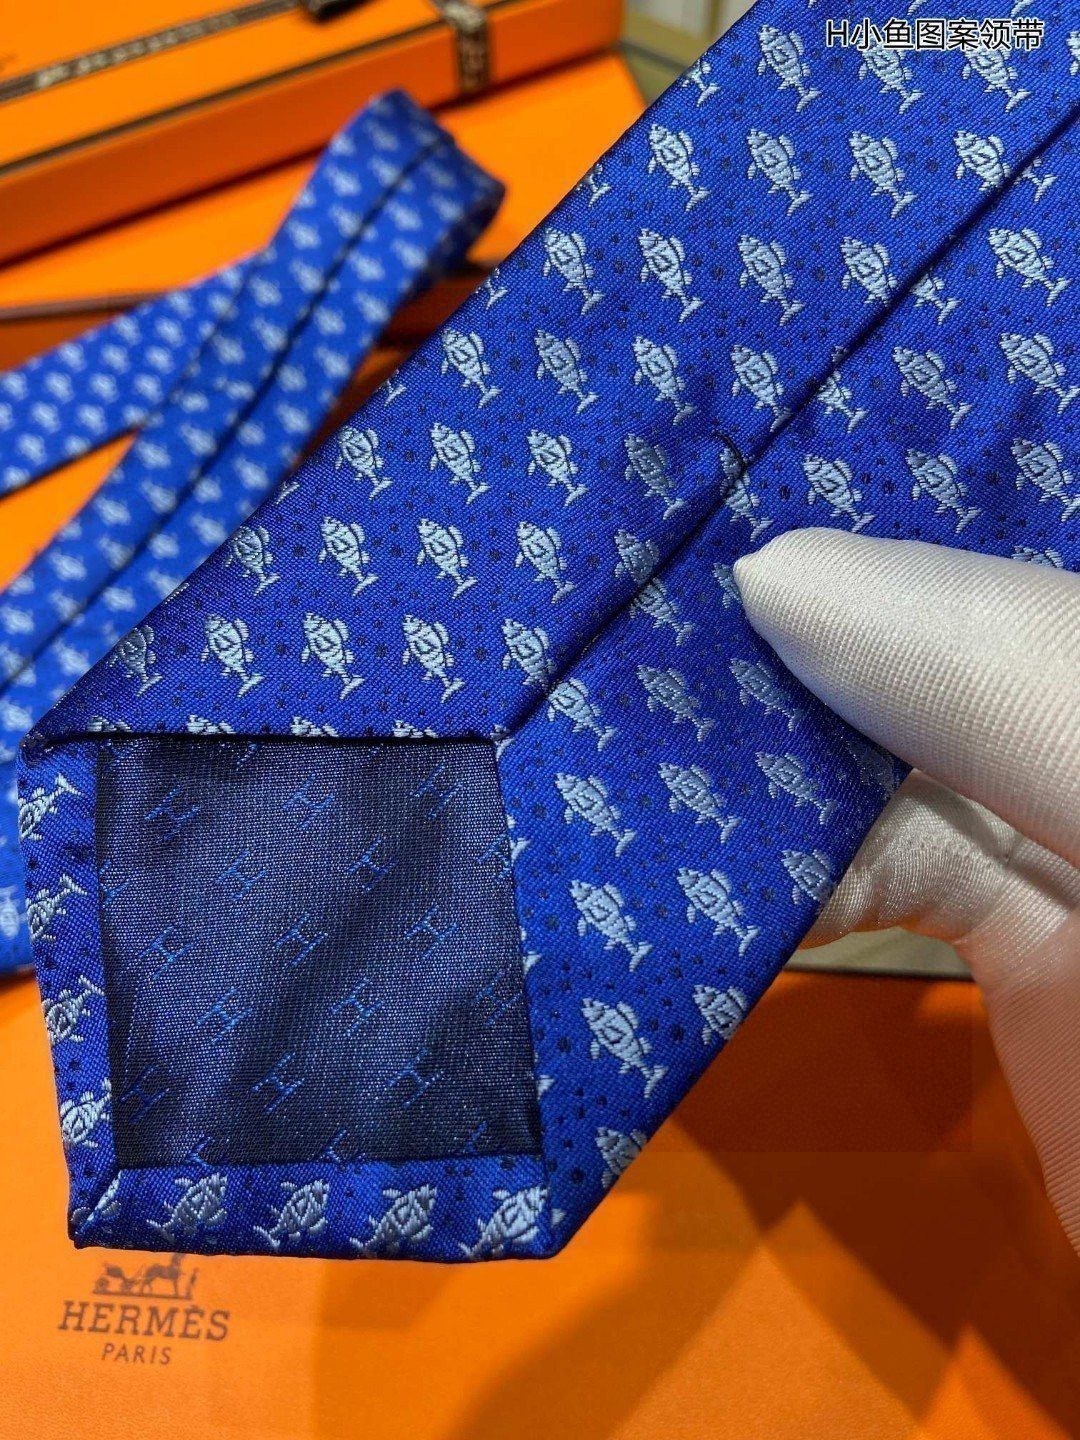 特价男士新款领带系列H小鱼图案领带稀有H家每年都有一千条不同印花的领带面世从最初的多以几何图案表现骑术活